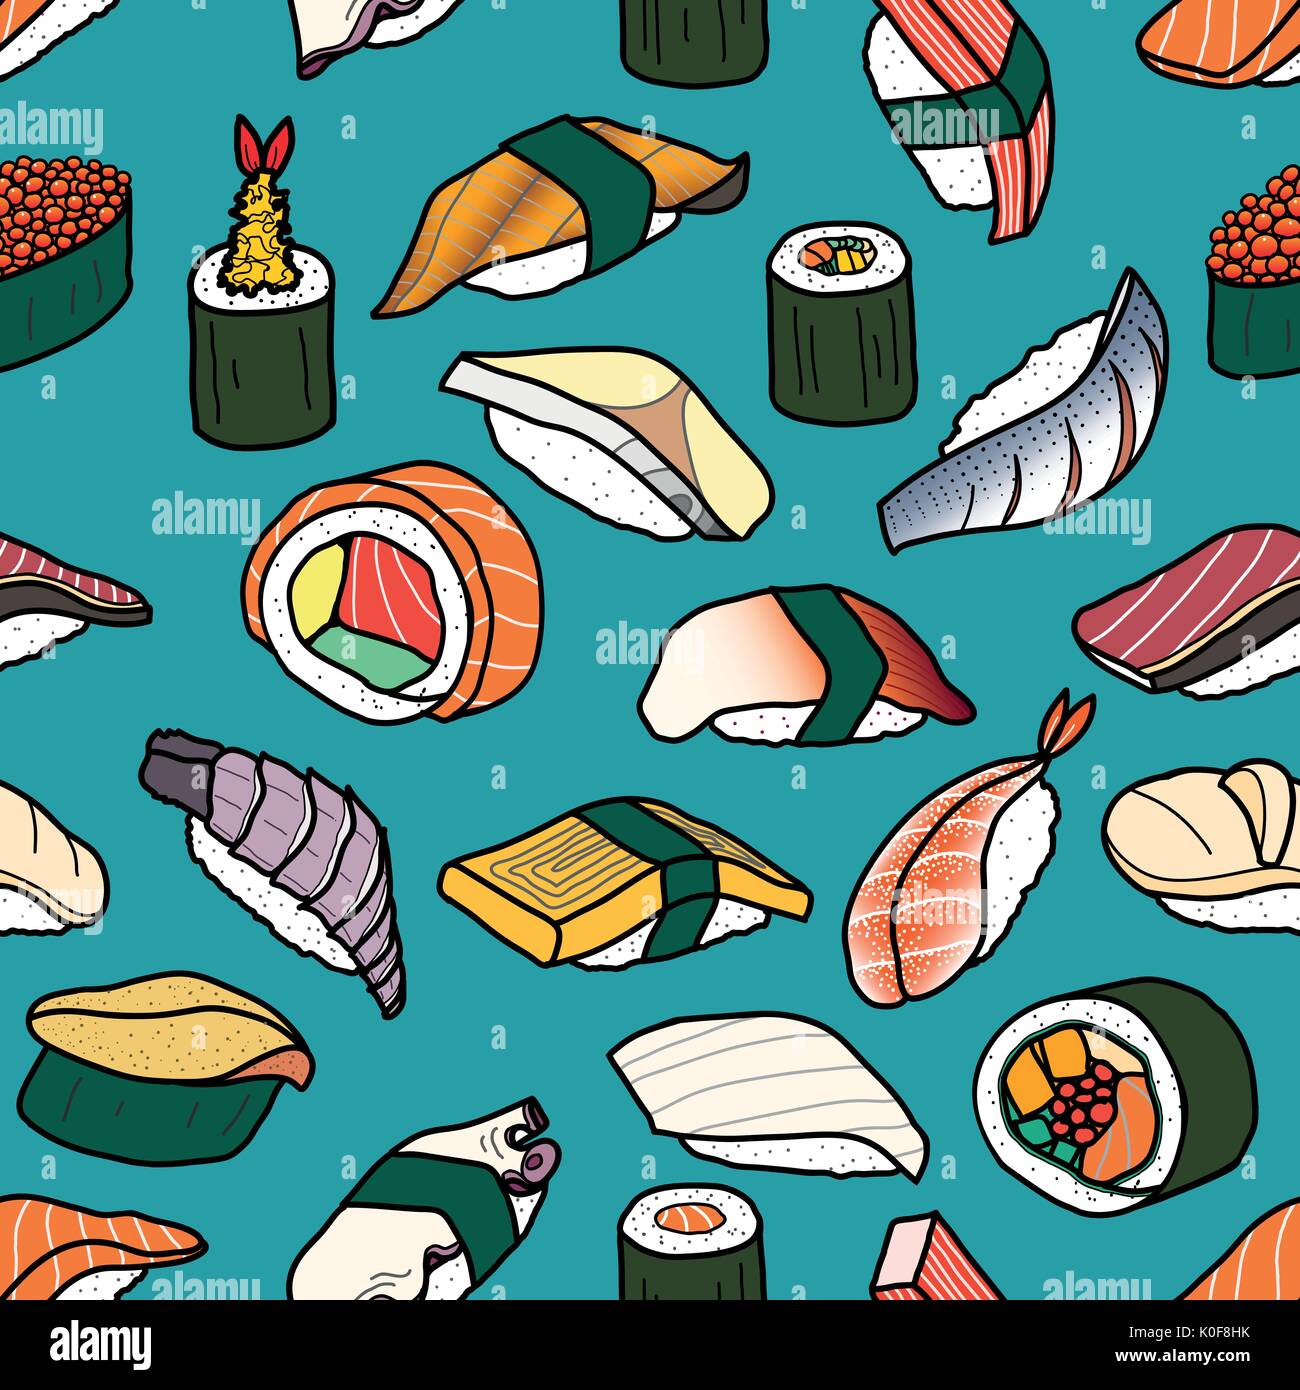 Bunte Sushi random auf Vintage blauen Hintergrund. Nettes japanisches Essen Abbildung Hand gezeichneten Stil. Nahtlose patterm. Stock Vektor